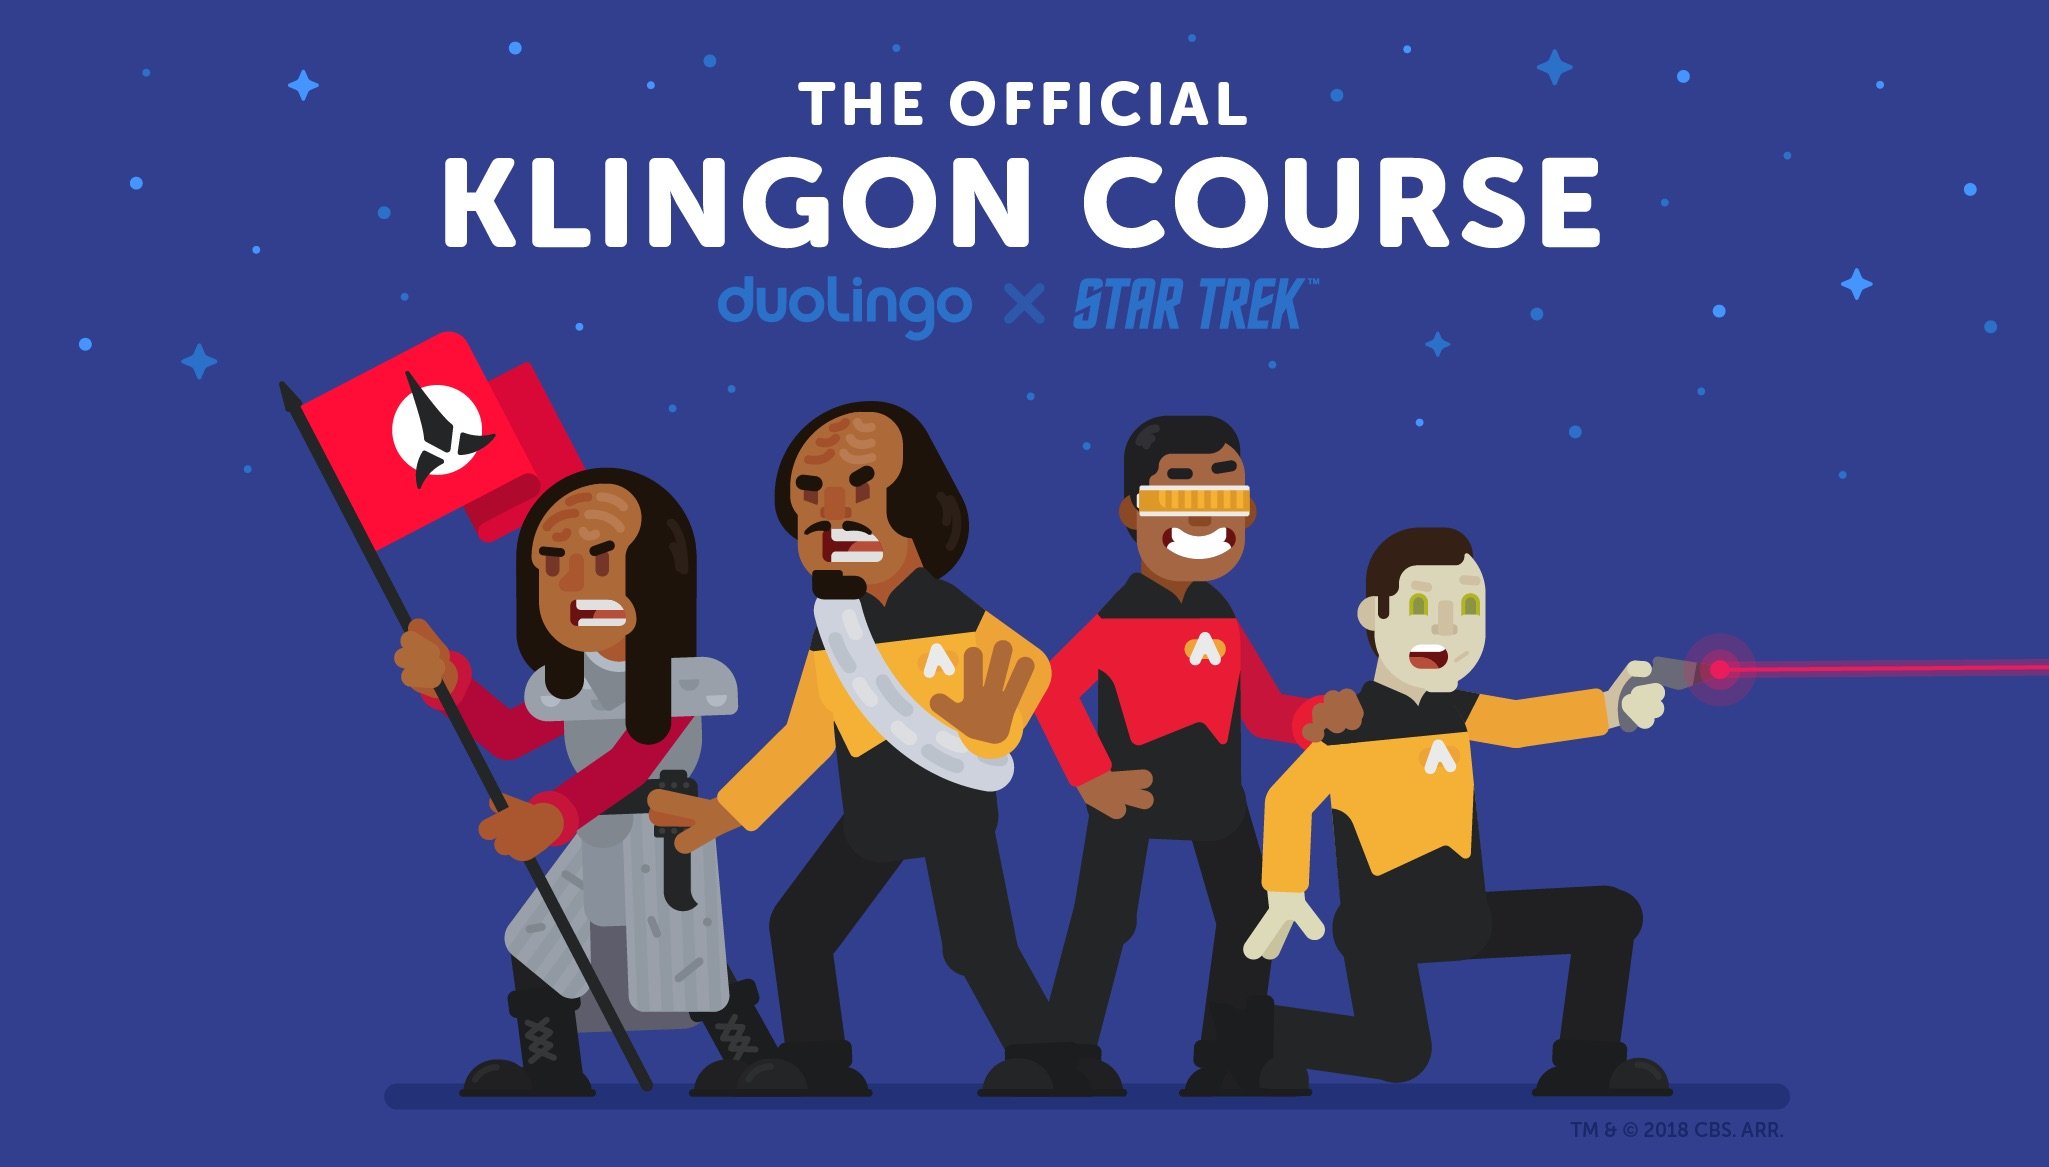 Uczyć się język klingoński z Star Trek teraz każdy może